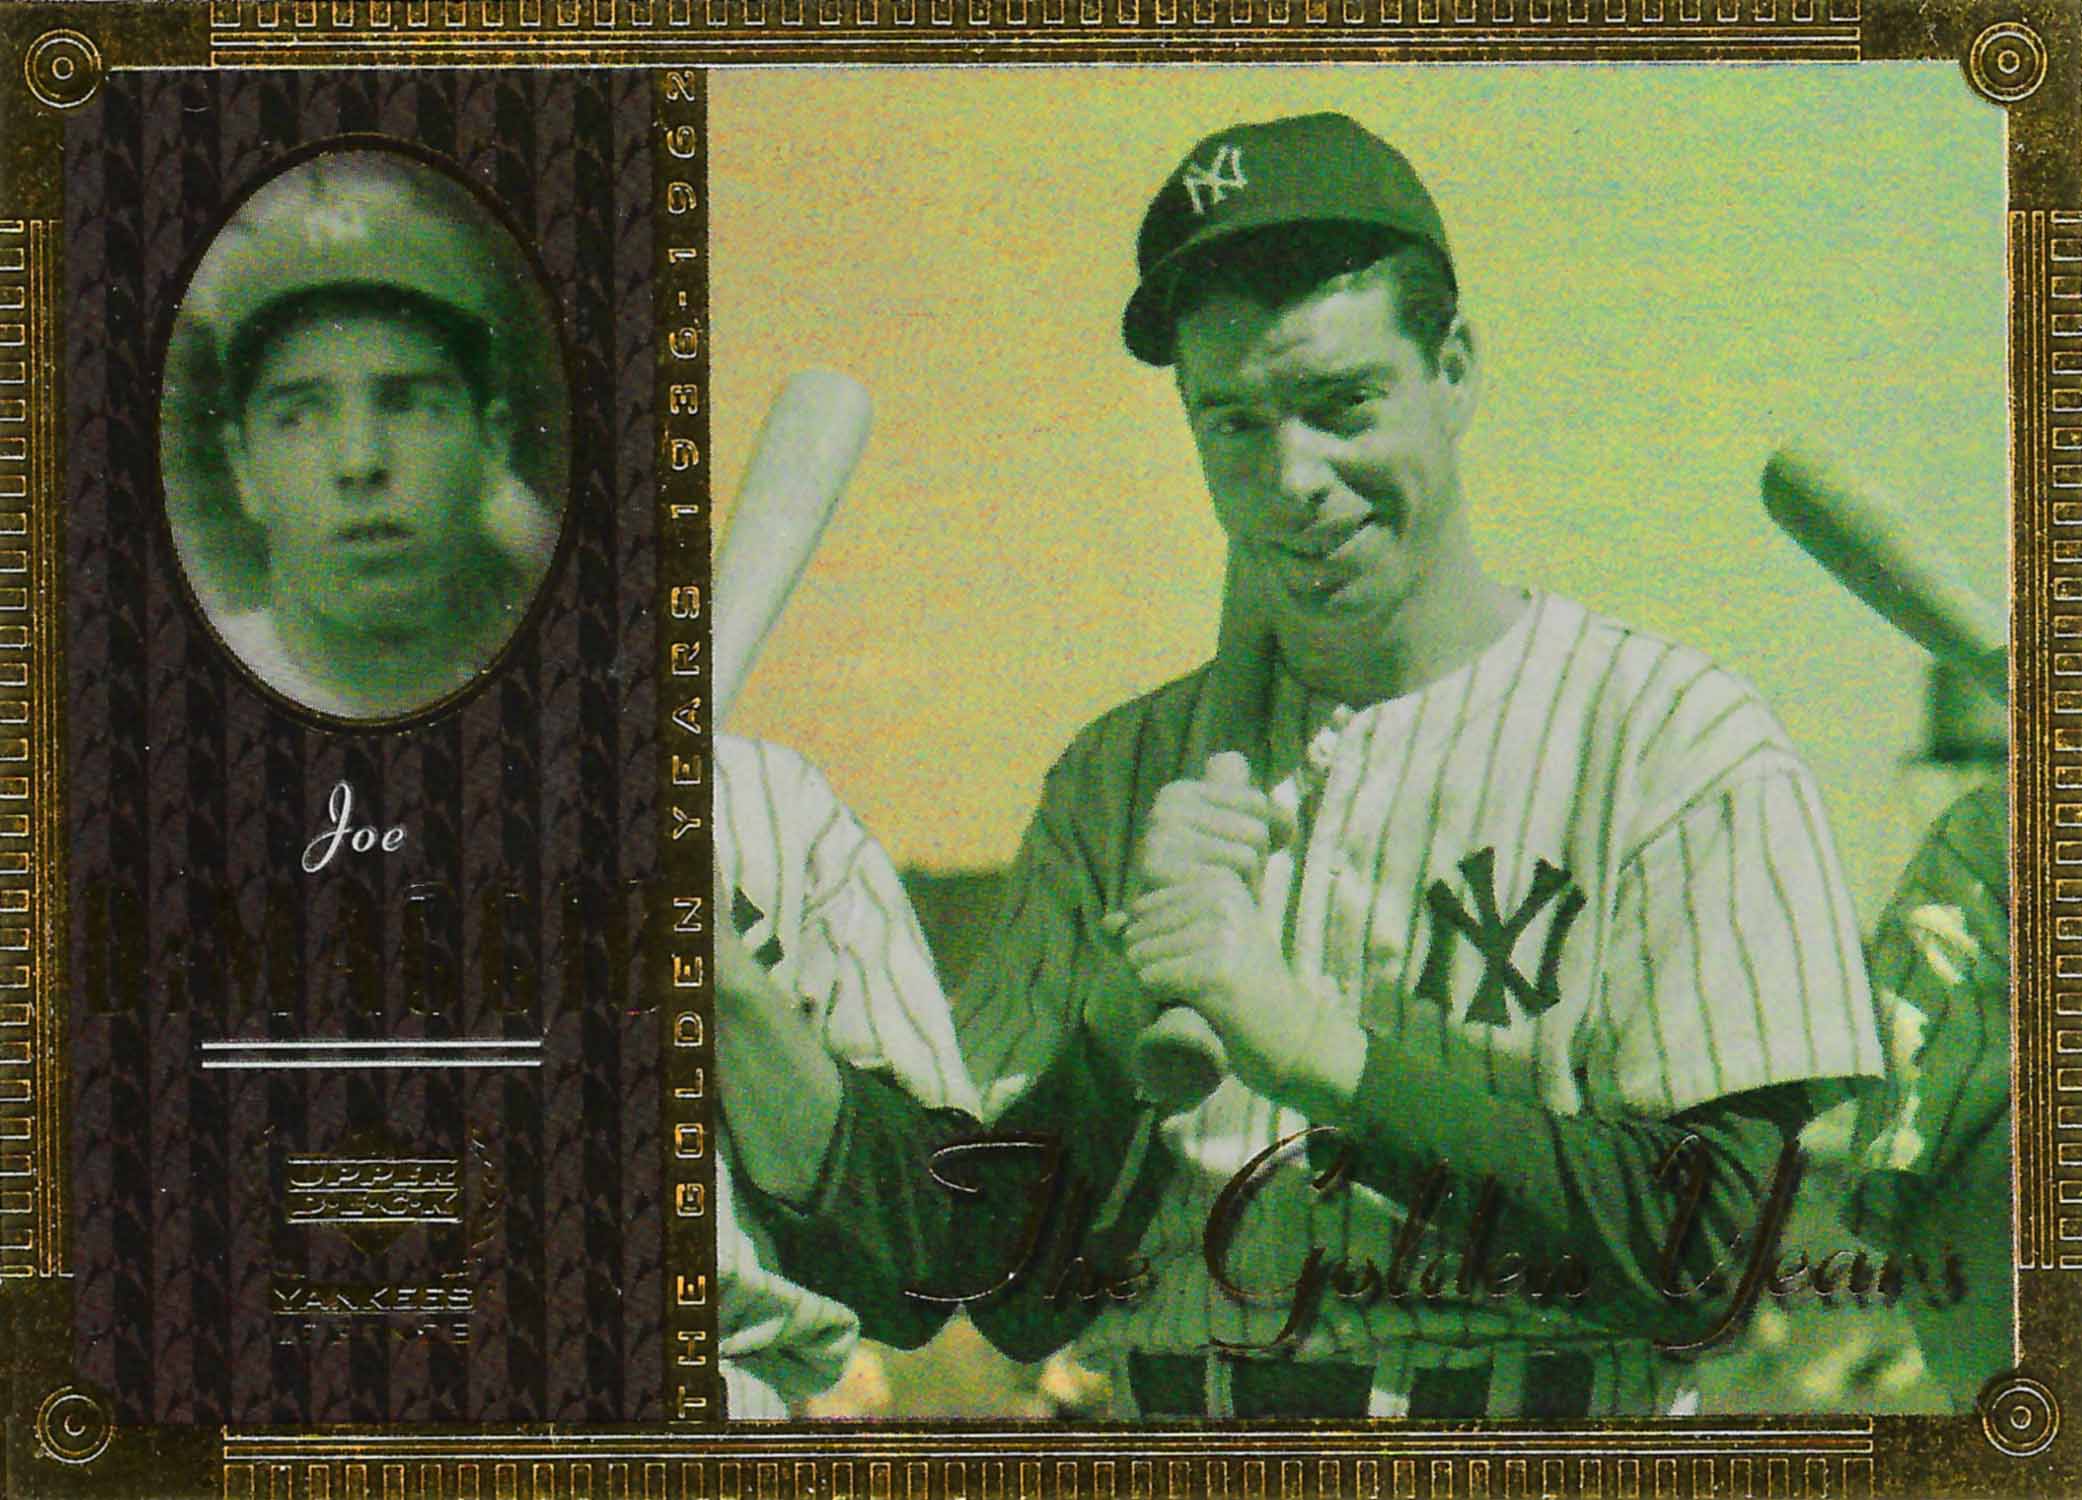 2000 Upper Deck Yankees Legends Golden Years